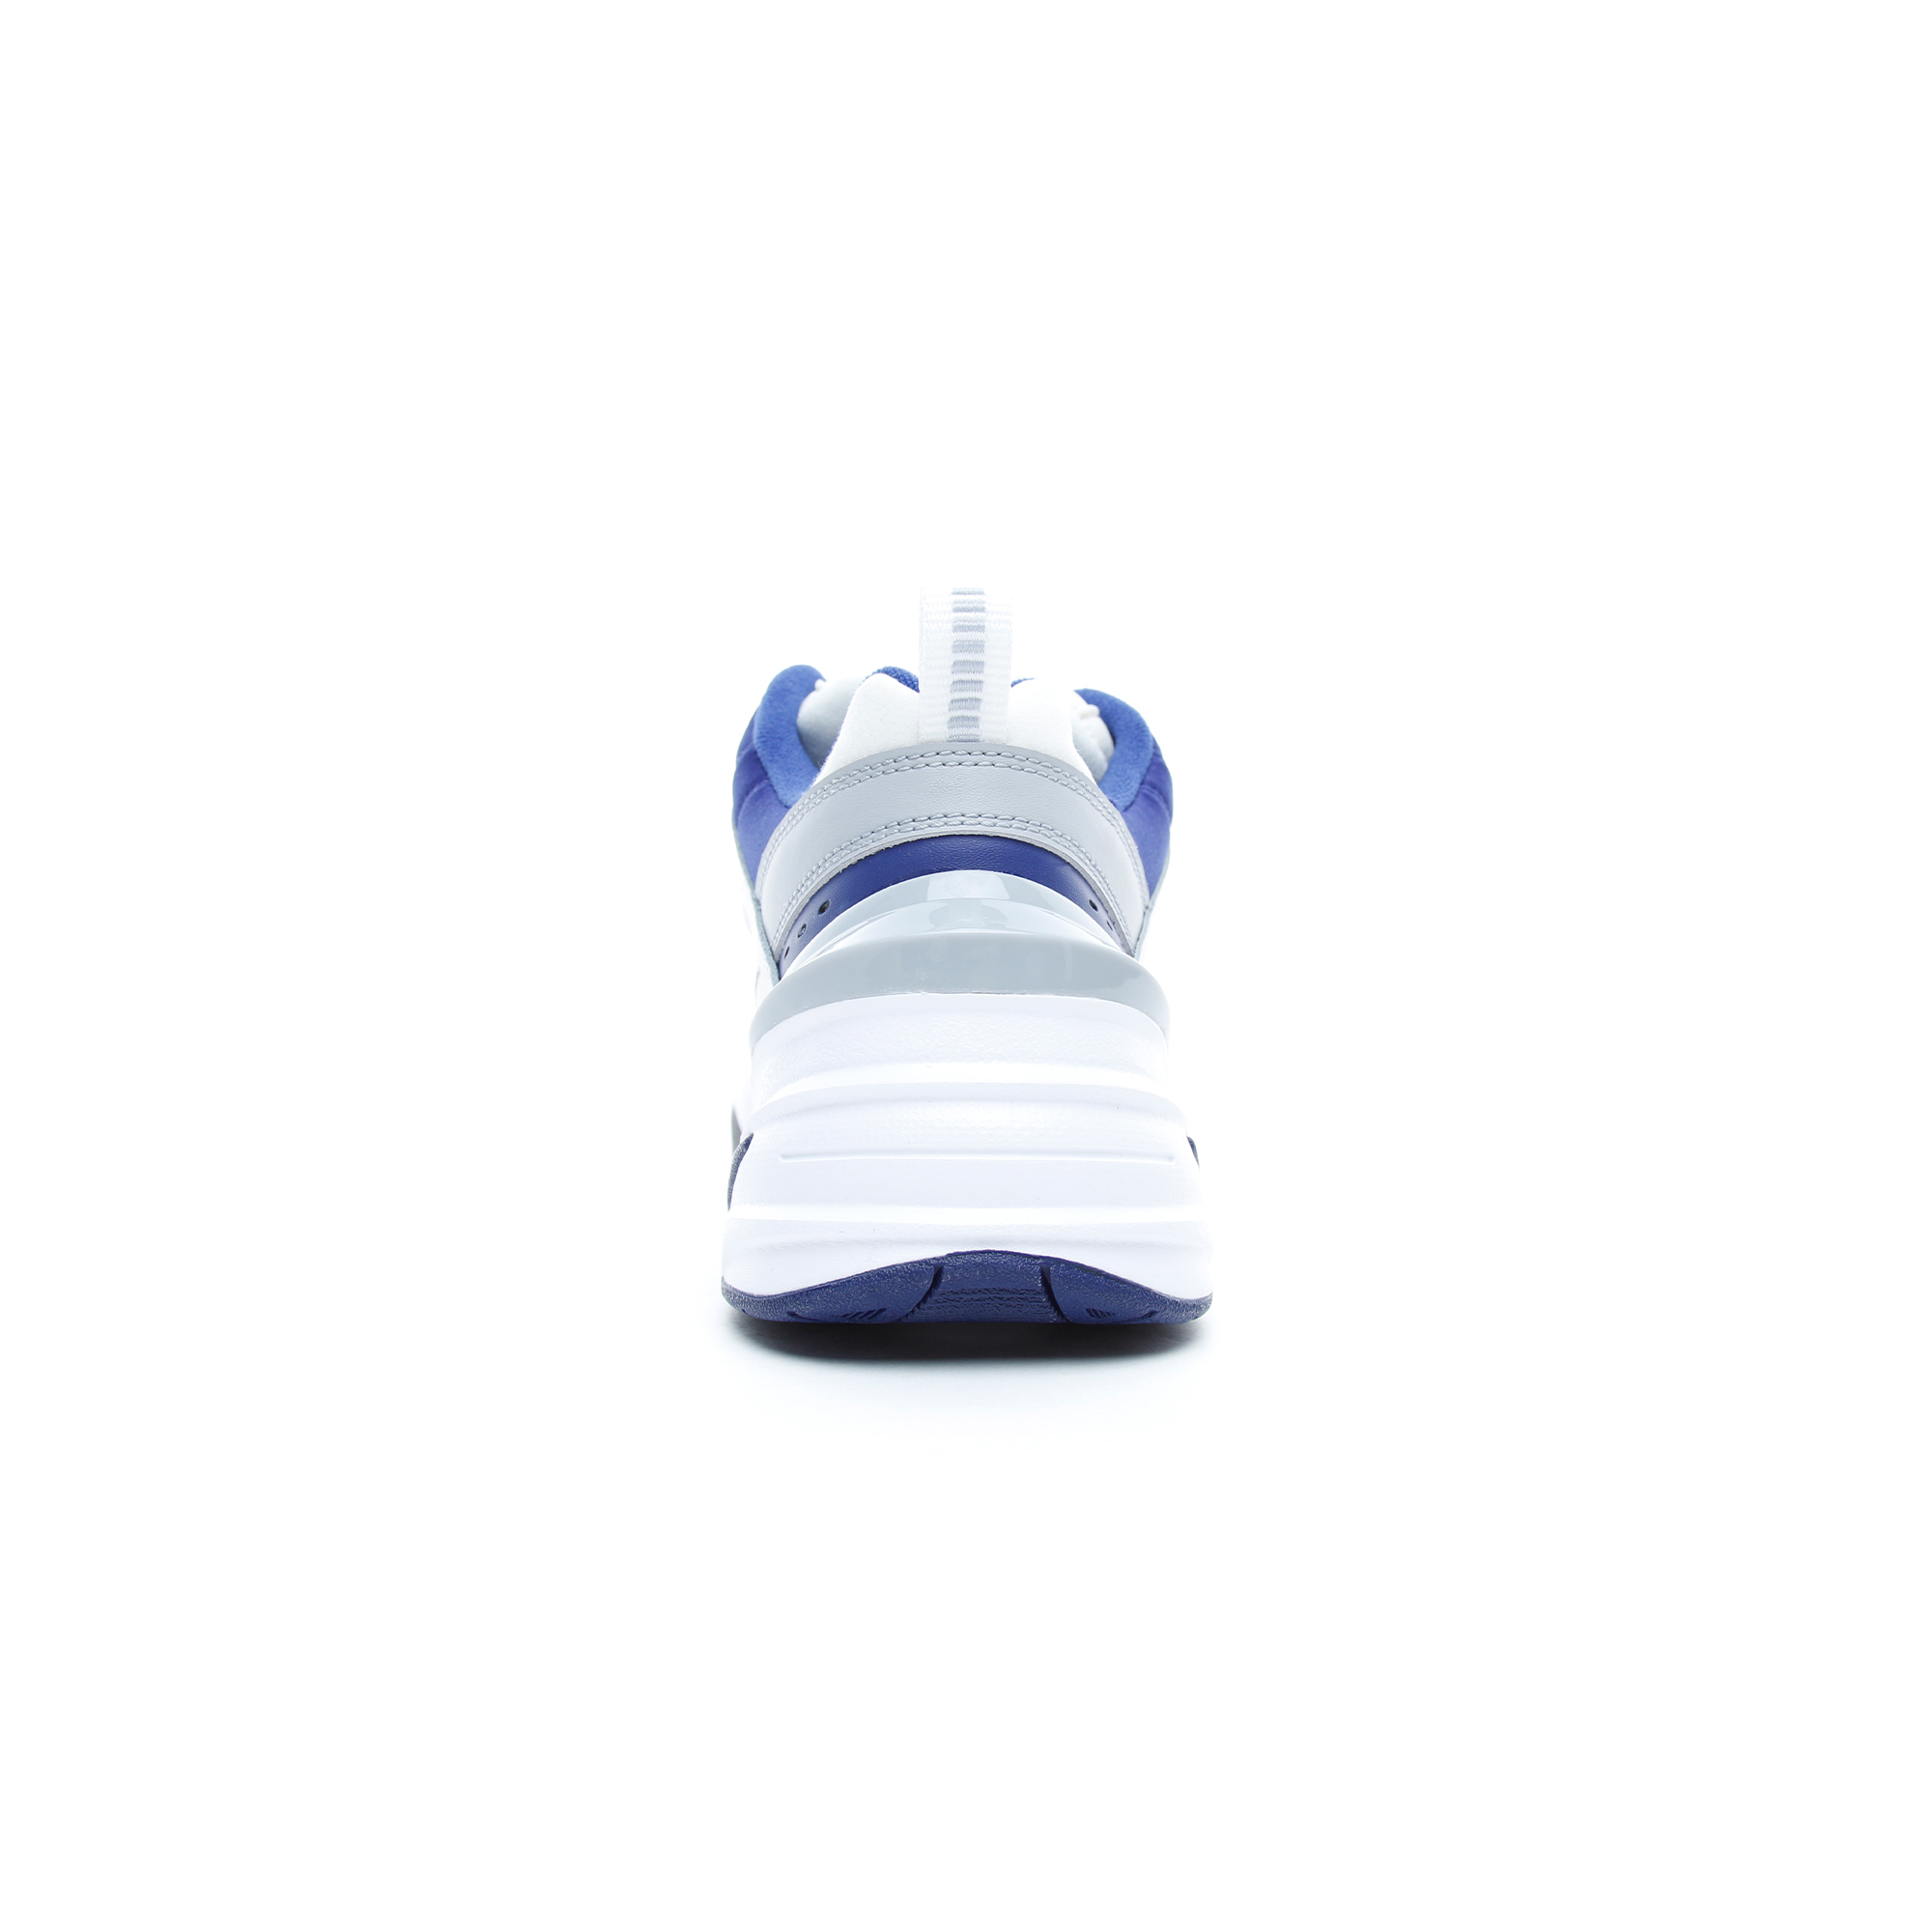 Nike M2K Tekno Beyaz - Lacivert Erkek Spor Ayakkabı